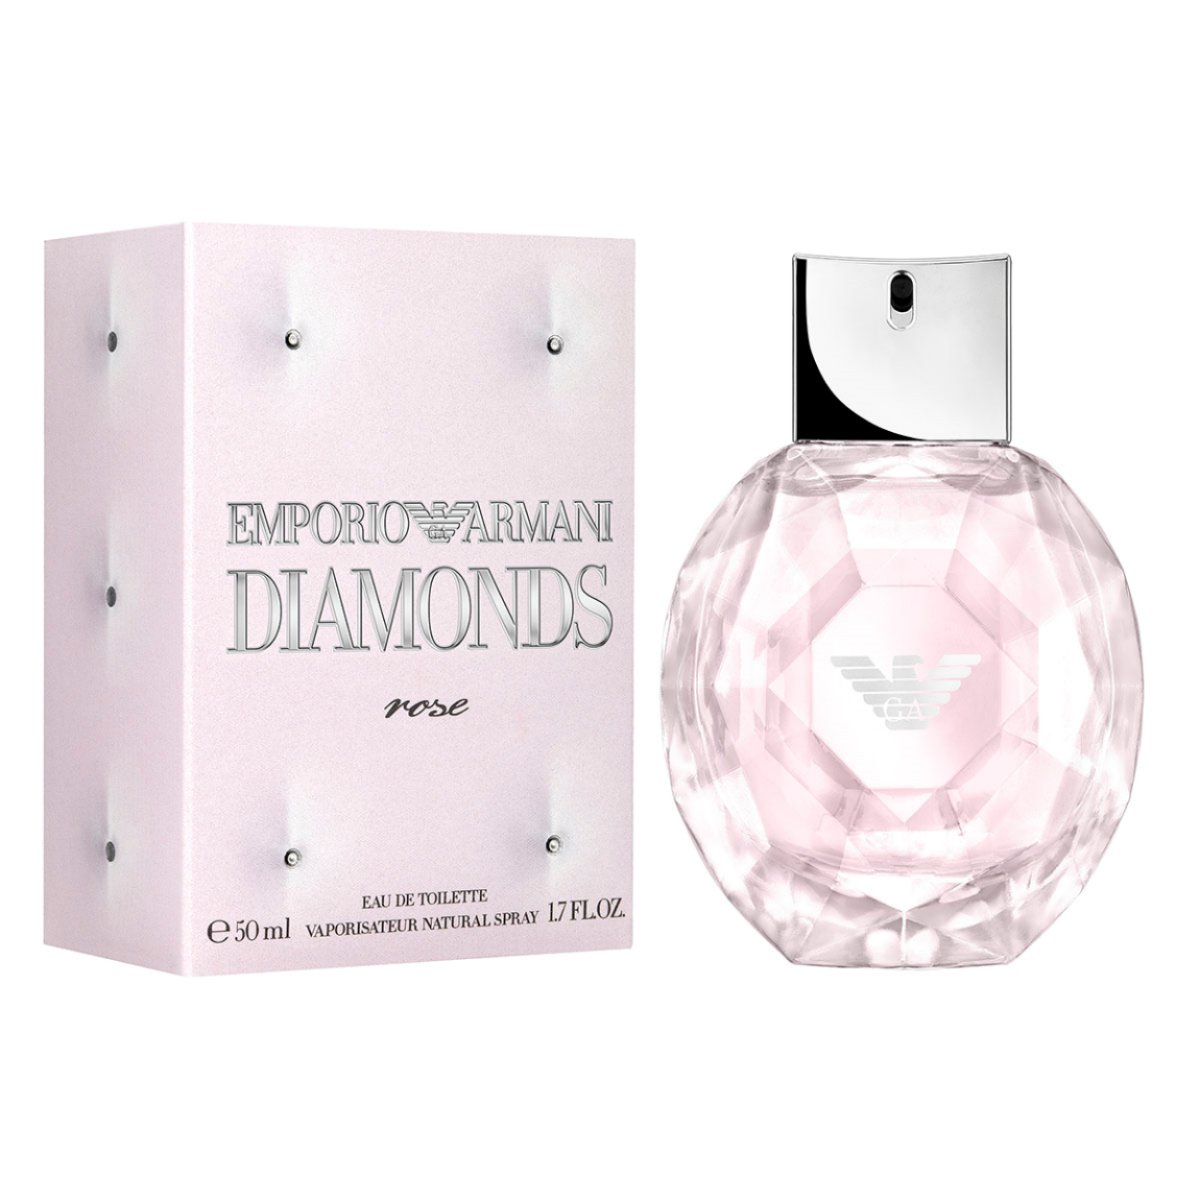 Emporio Armani Diamonds Rose For Women 